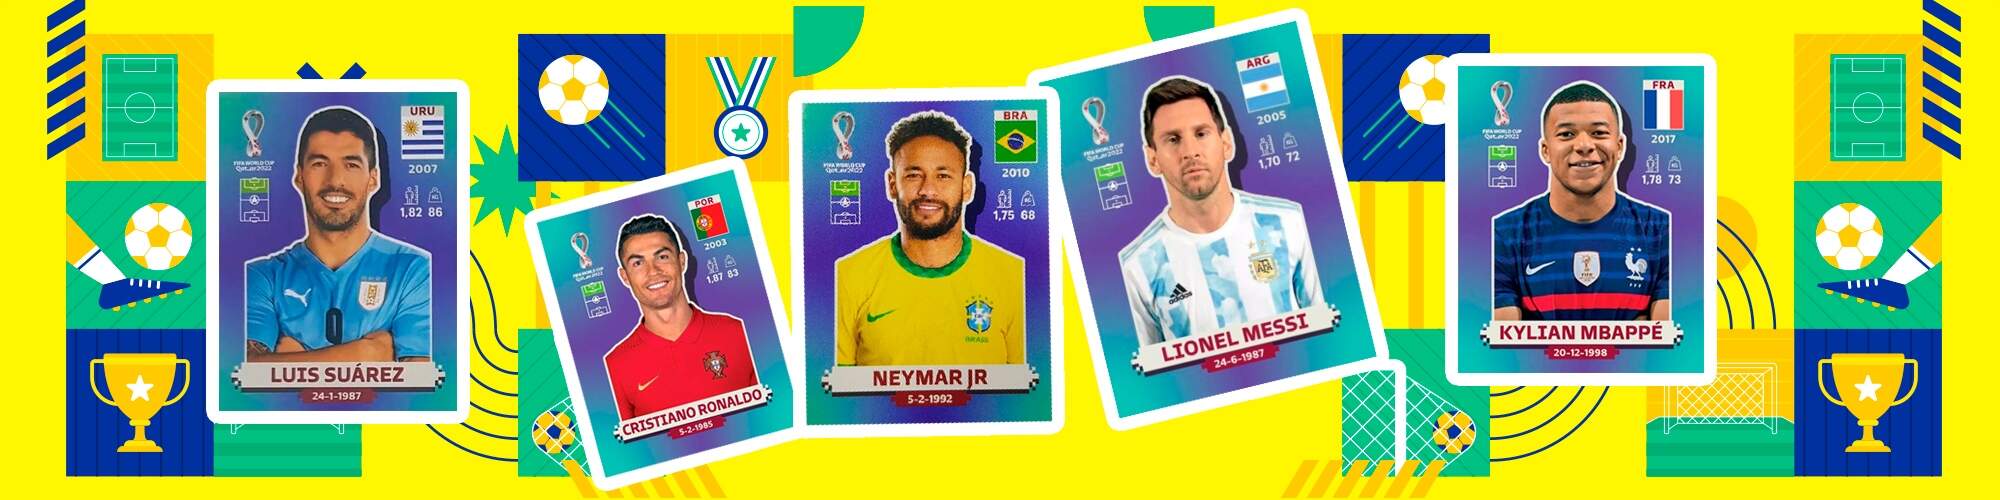 Figurinha Legend Neymar OURO Copa do Mundo 2022 1°Linha premium